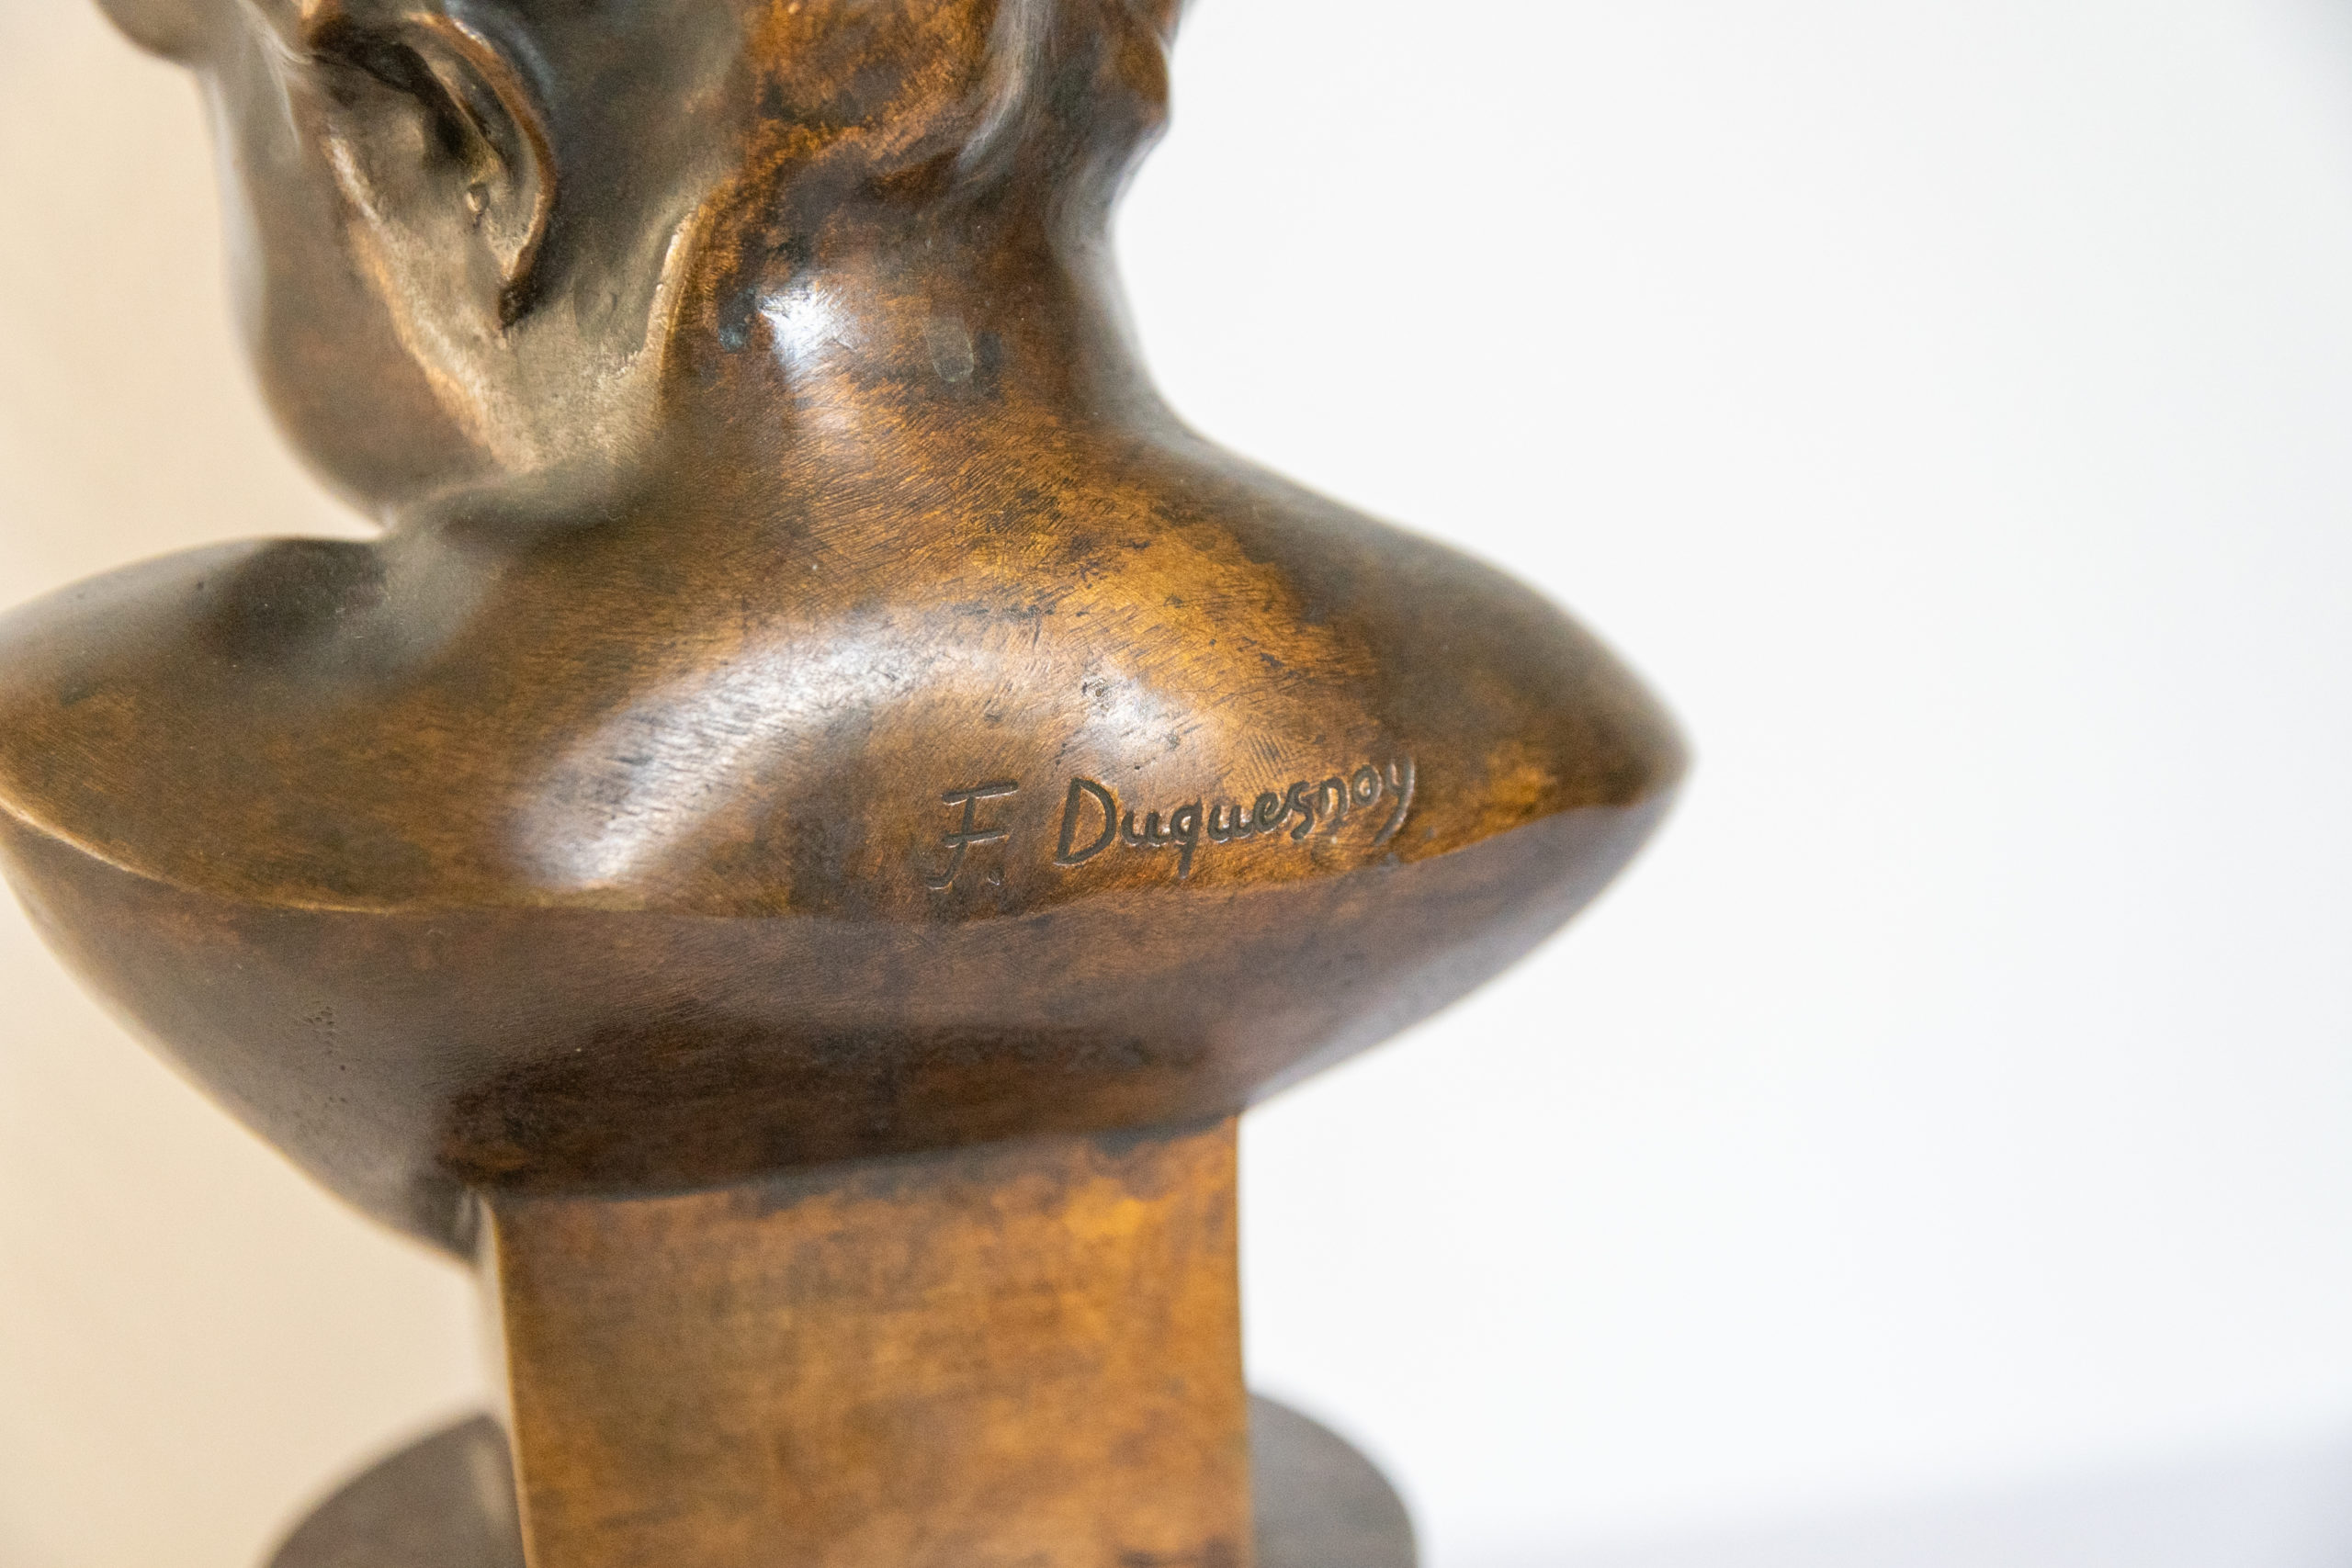 Buste-bronze-enfant-signé-Francois-duquesnoy-antiquité-bronze-aurore-morisse5